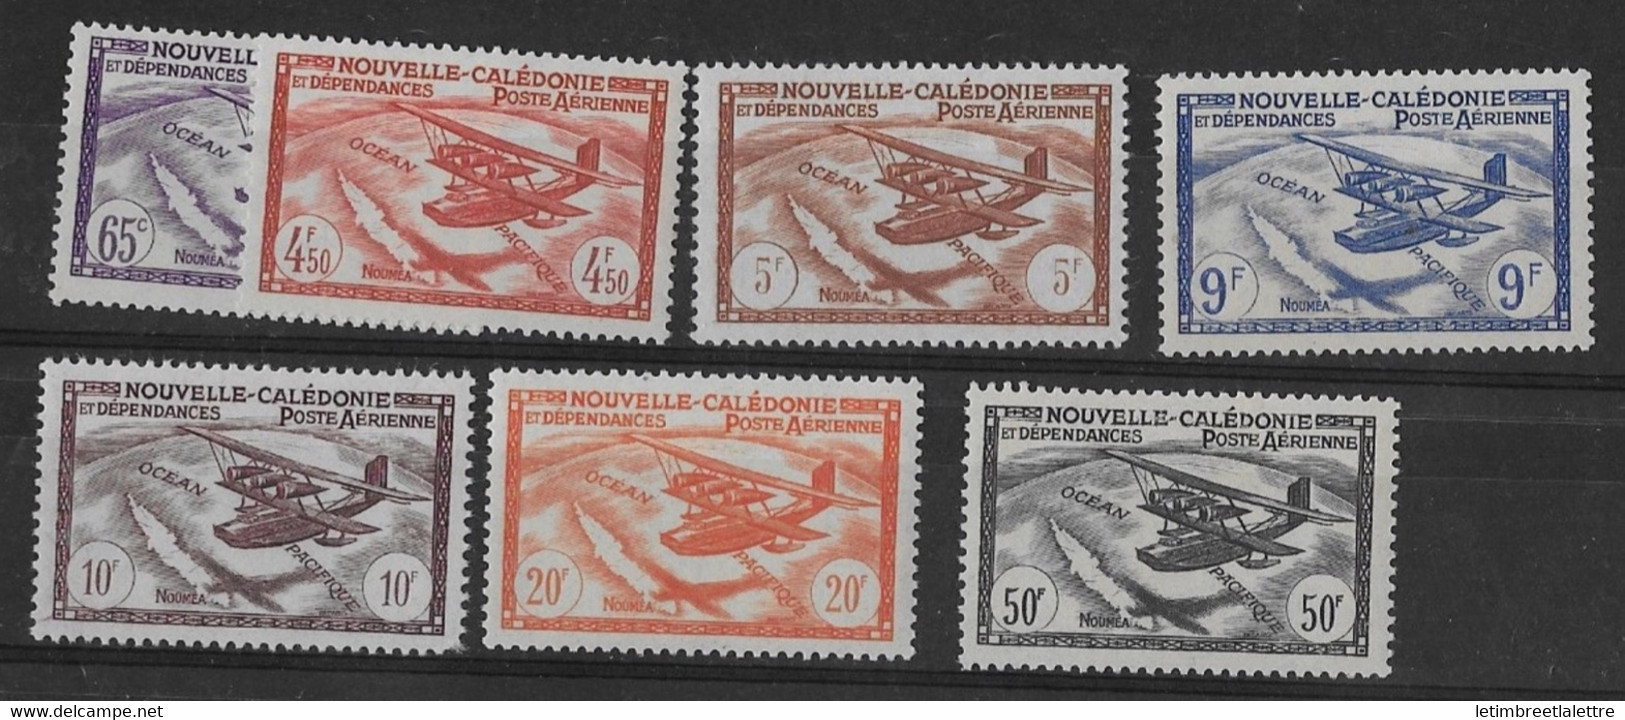 ⭐ Nouvelle Calédonie - Poste Aérienne - YT N° 39 à 45 ** - Neuf Sans Charnière - 1942 / 1943 ⭐ - Ungebraucht